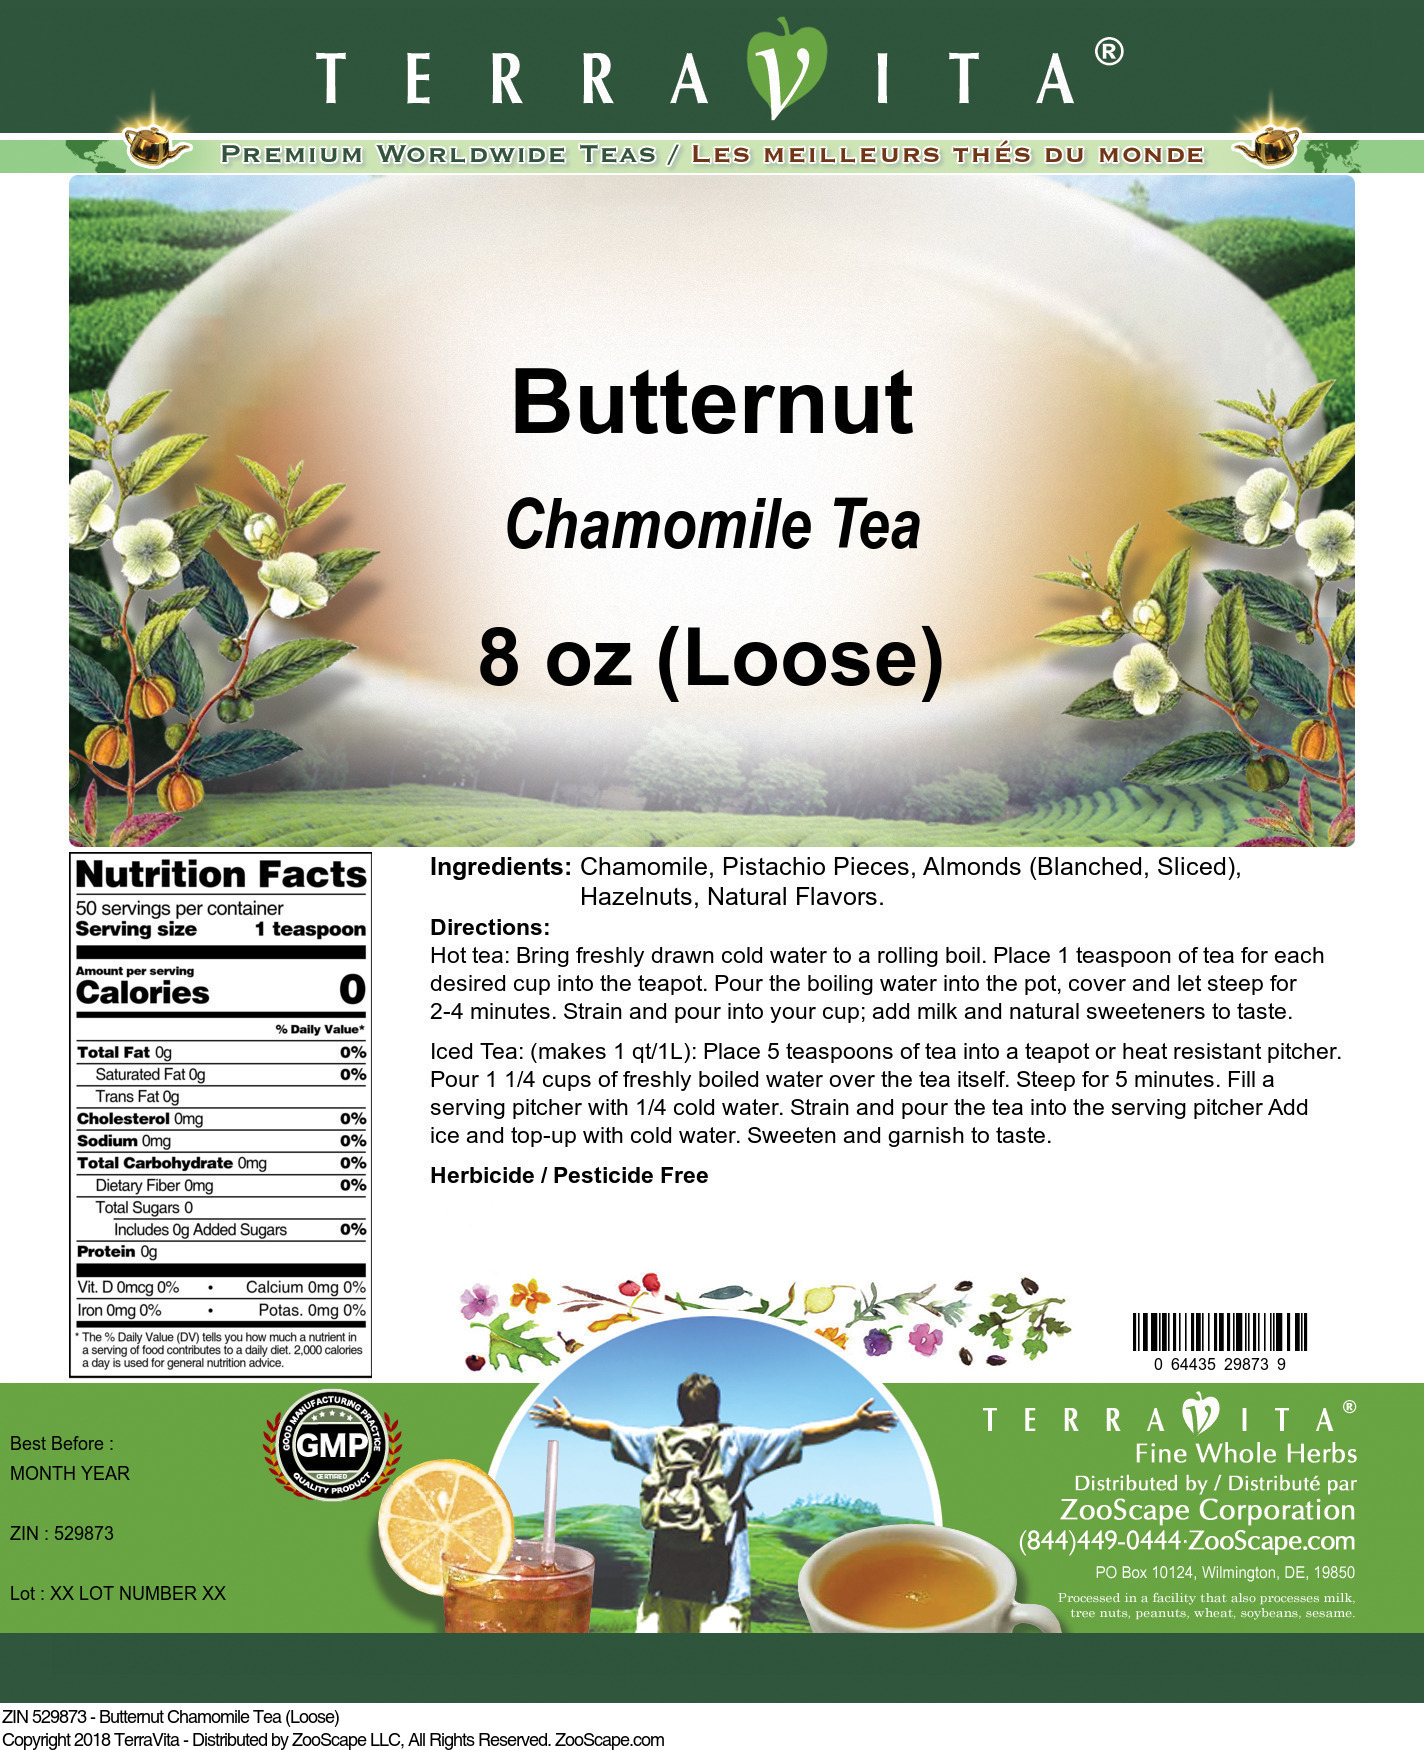 Butternut Chamomile Tea (Loose) - Label